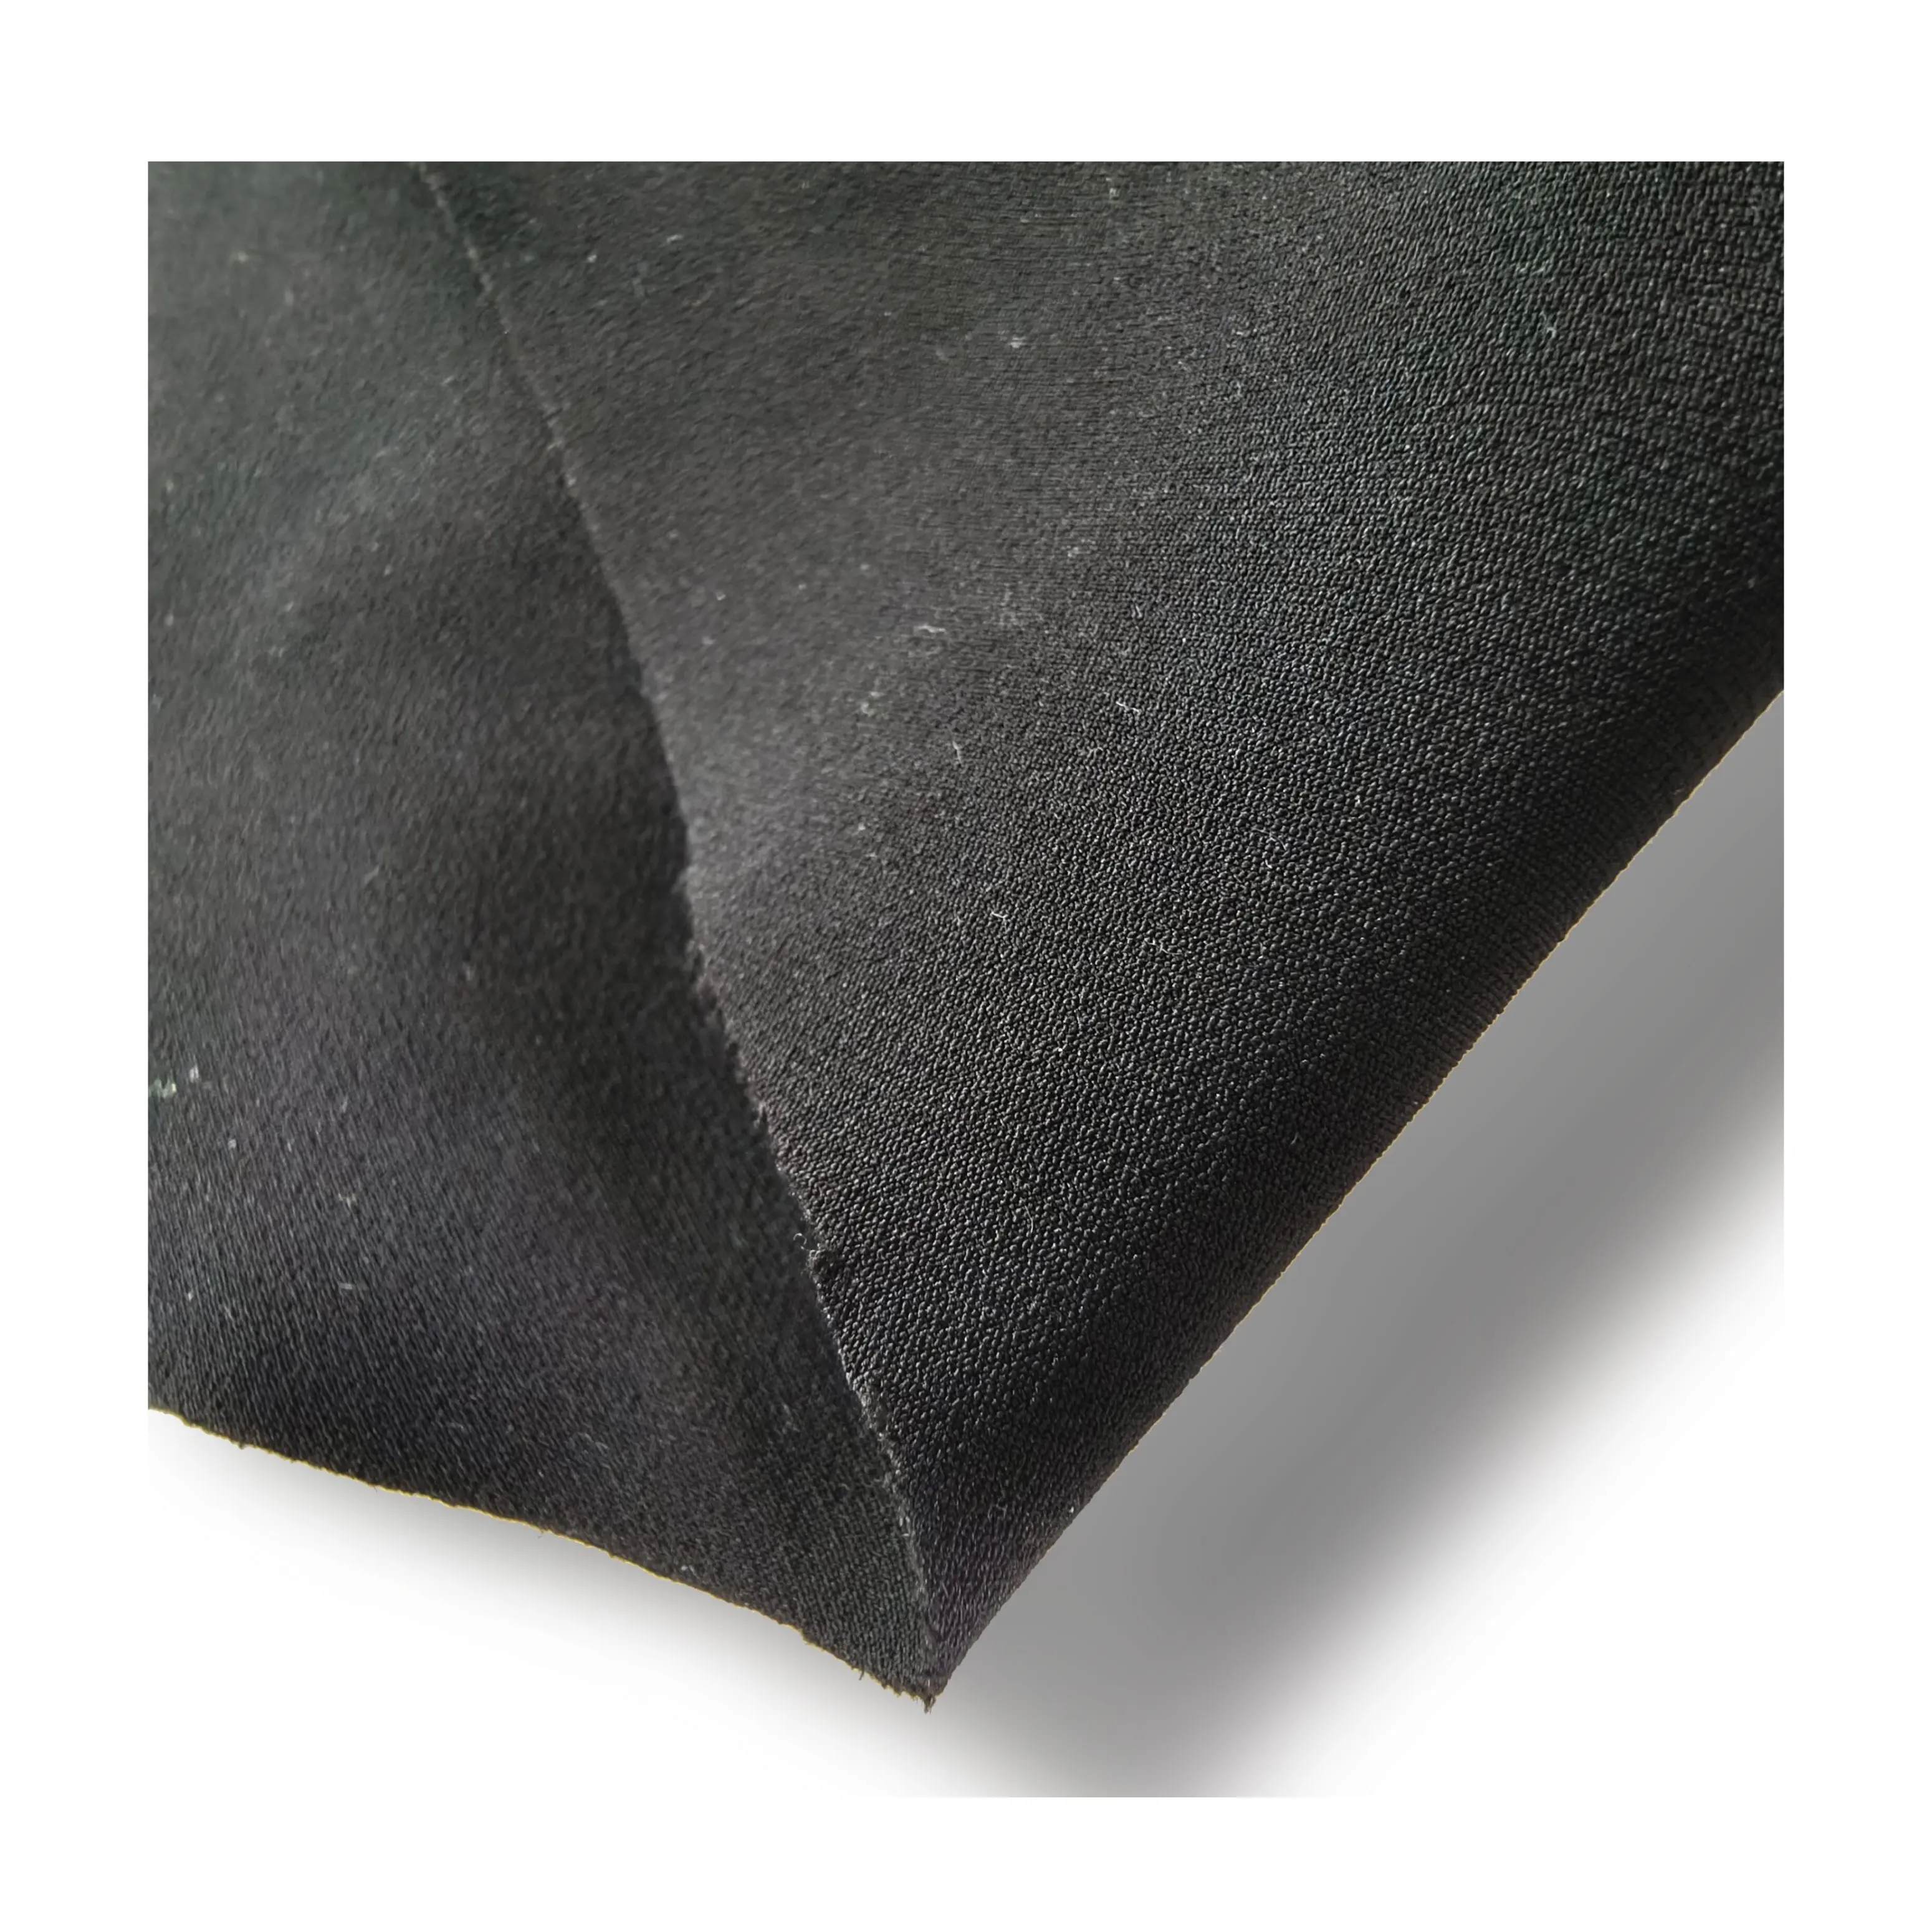 220gsm pantalons de randonnée robustes tissu polyester spandex tissu de sport extensible dans les 4 sens